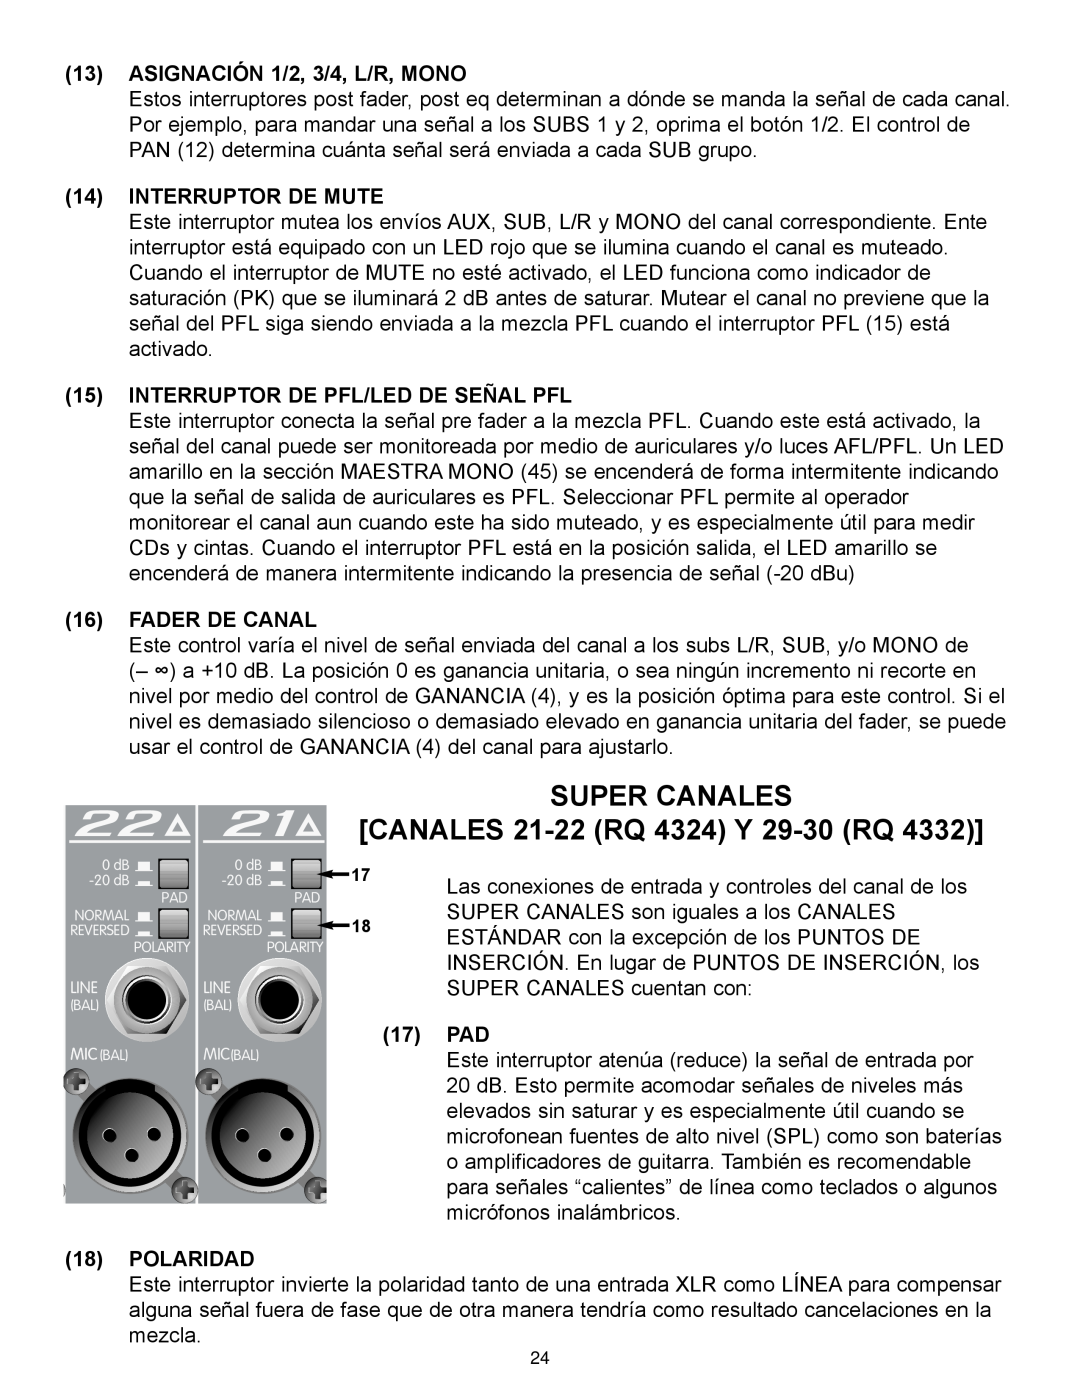 Peavey RQ 4300 Series SUPER CANALES CANALES 21-22 RQ 4324 Y 29-30 RQ, ASIGNACIÓN 1/2, 3/4, L/R, MONO, Interruptor De Mute 